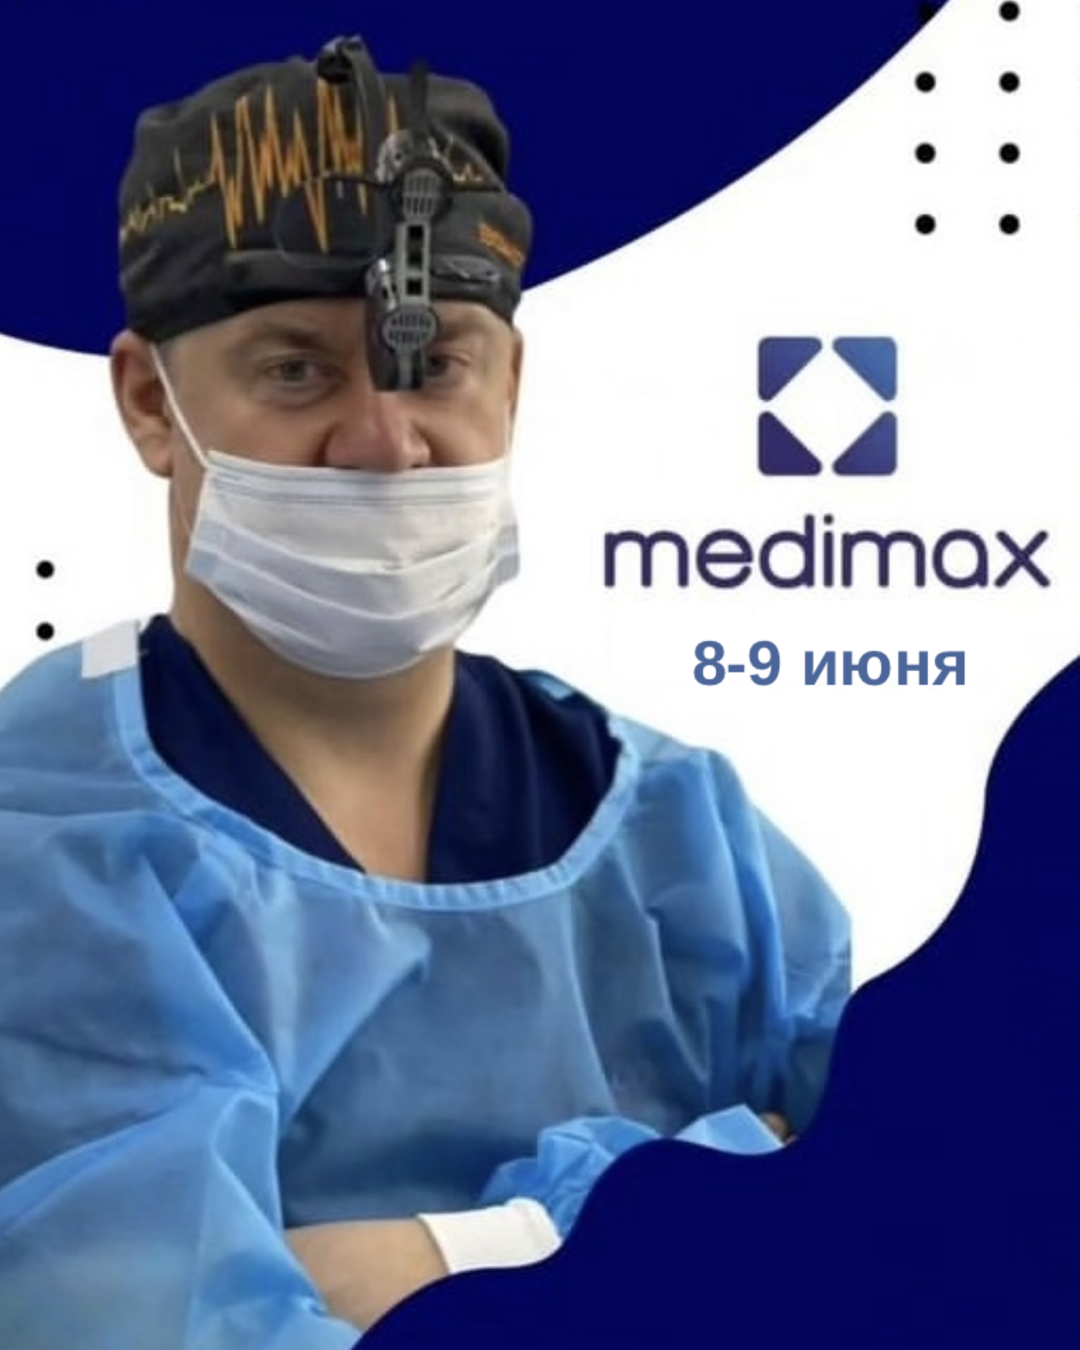 Михаил Черепенин в Ташкенте в Medimax 8-9 июня 